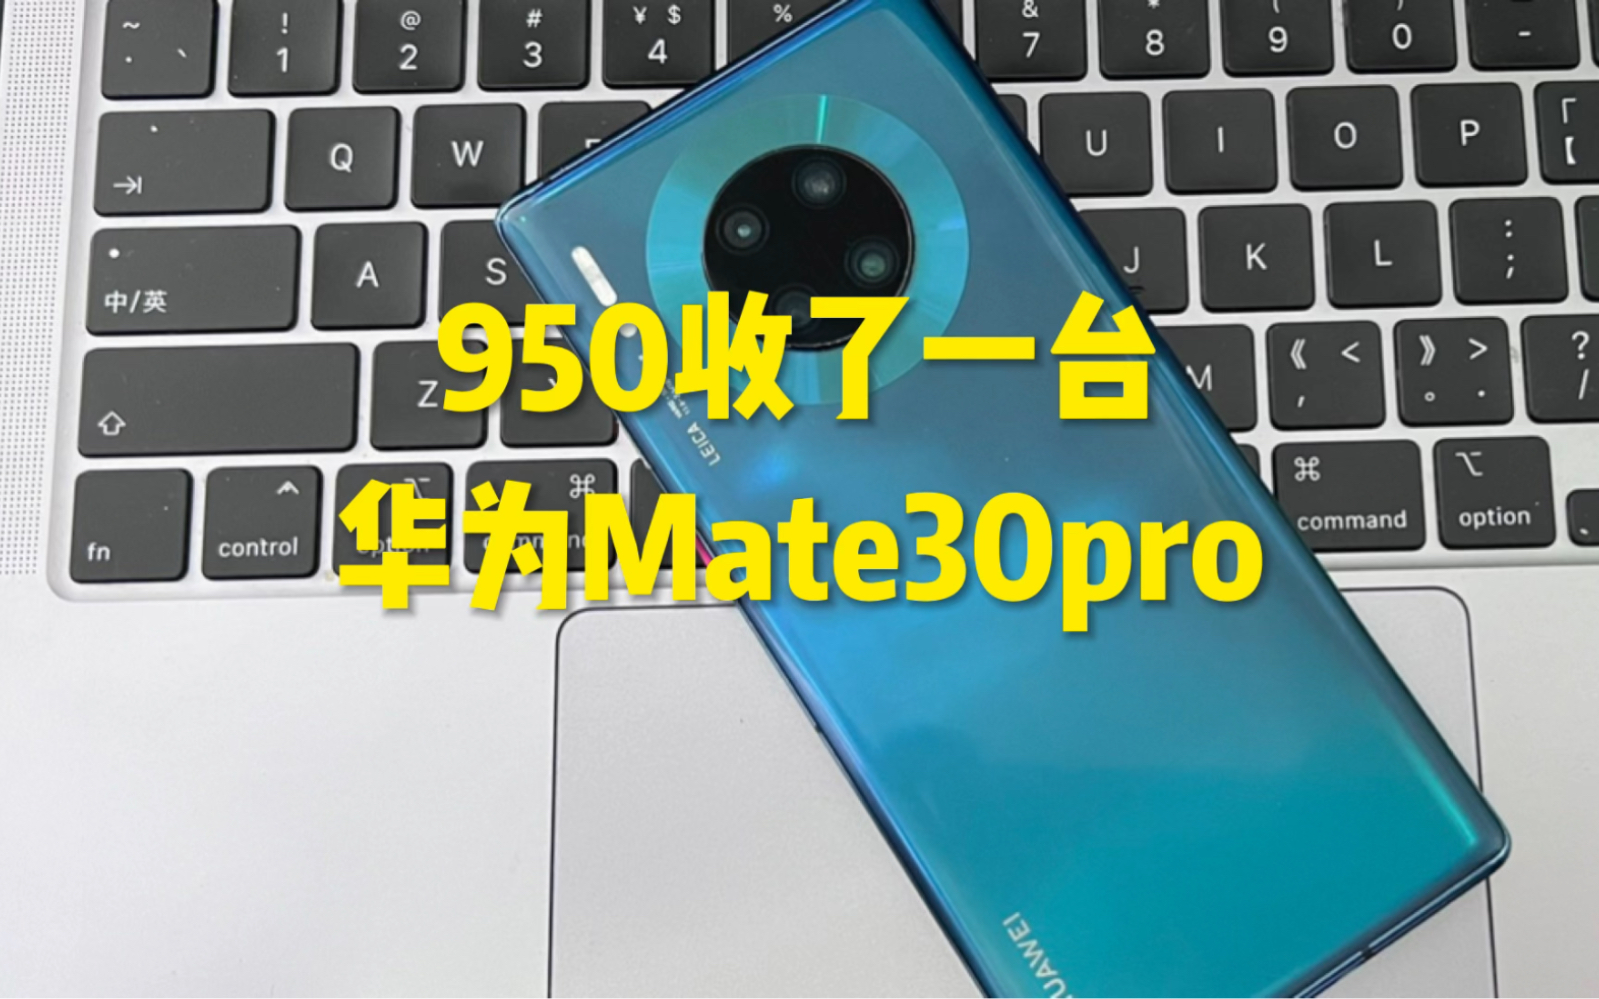 花了950买了一台华为Mate30pro！听说能升级鸿蒙4.0了？